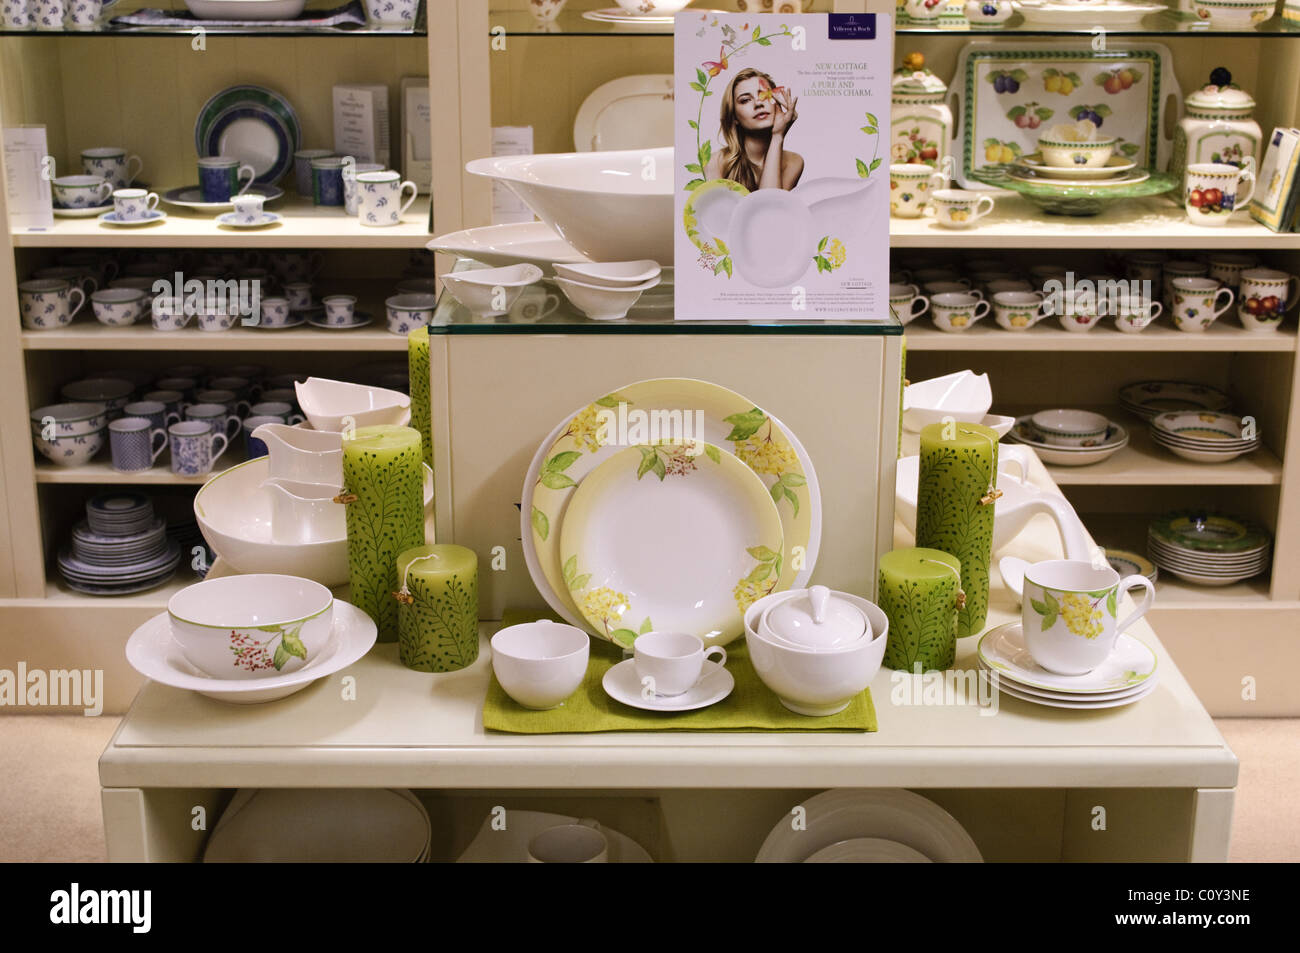 Vaisselle Villeroy & Boch en exposition dans un magasin de porcelaine Banque D'Images